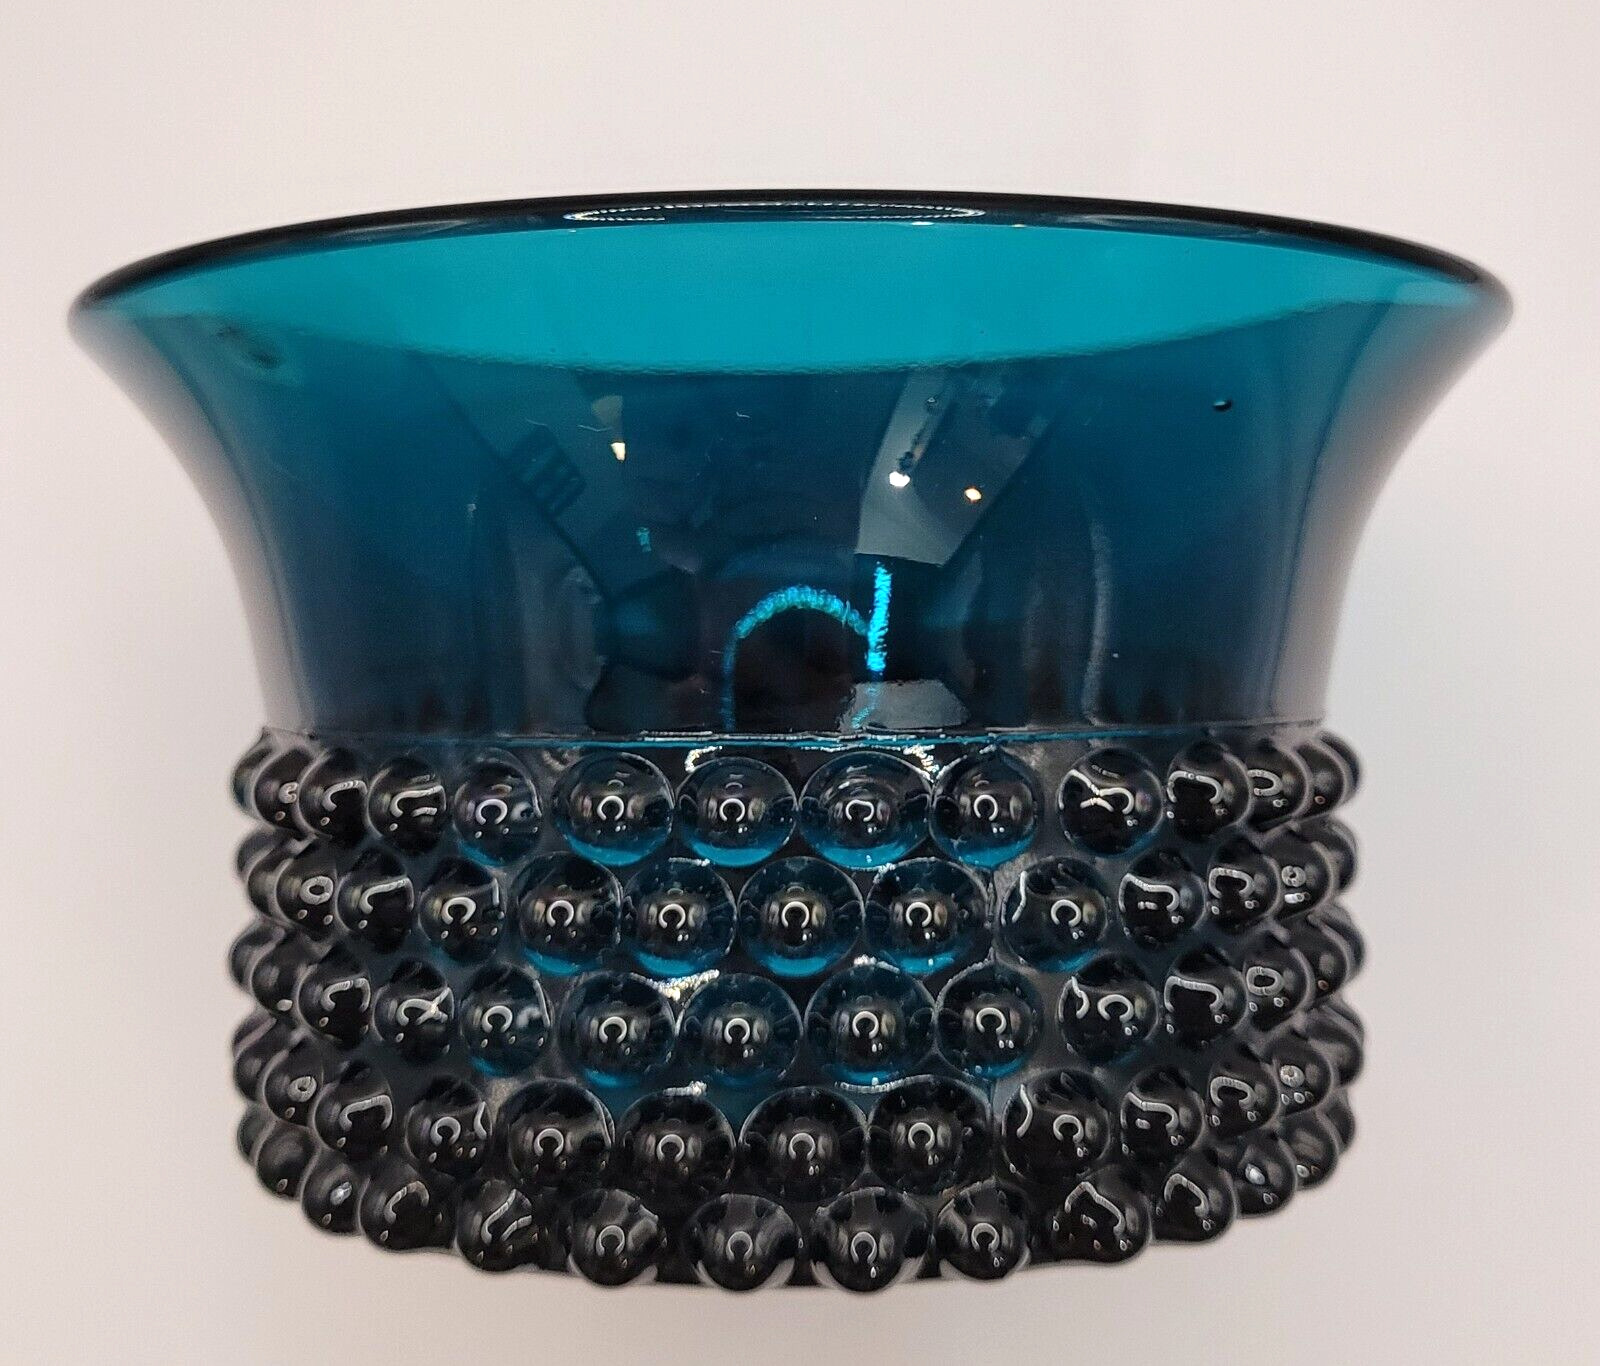 MCM Nuutajärvi Turquoise NYPPYLÄ Beaded Flared Bowl 5371 Designed By Saara Hopea